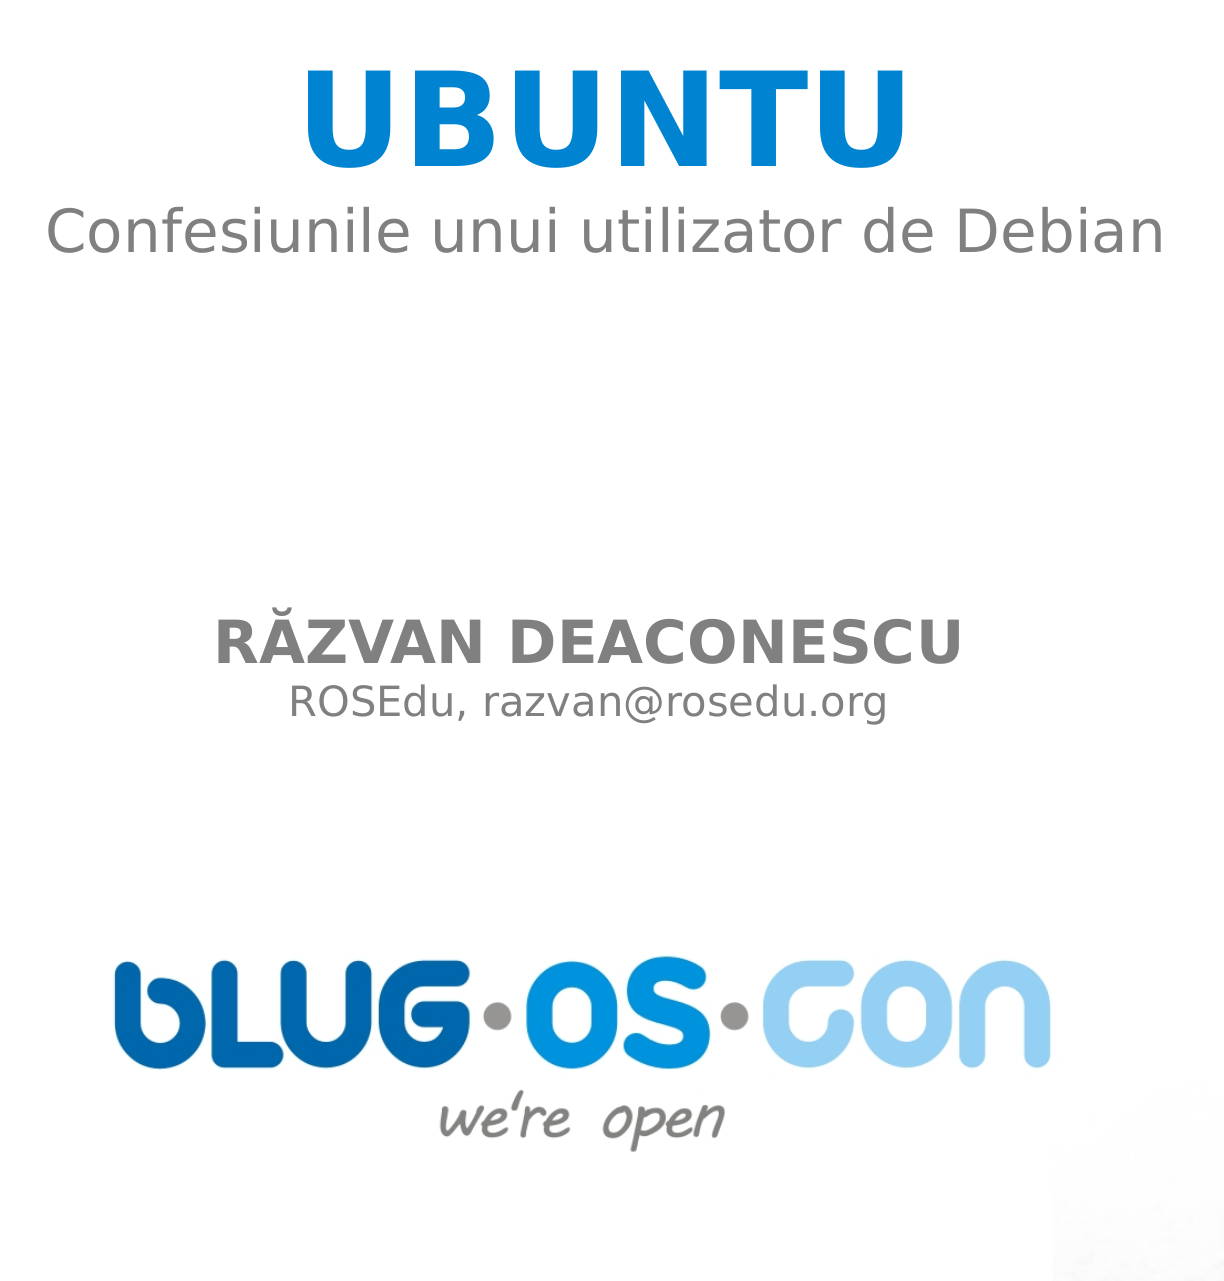 Prezentare.Debian.Ubuntu - Confesiunile unui utilizator de Debian